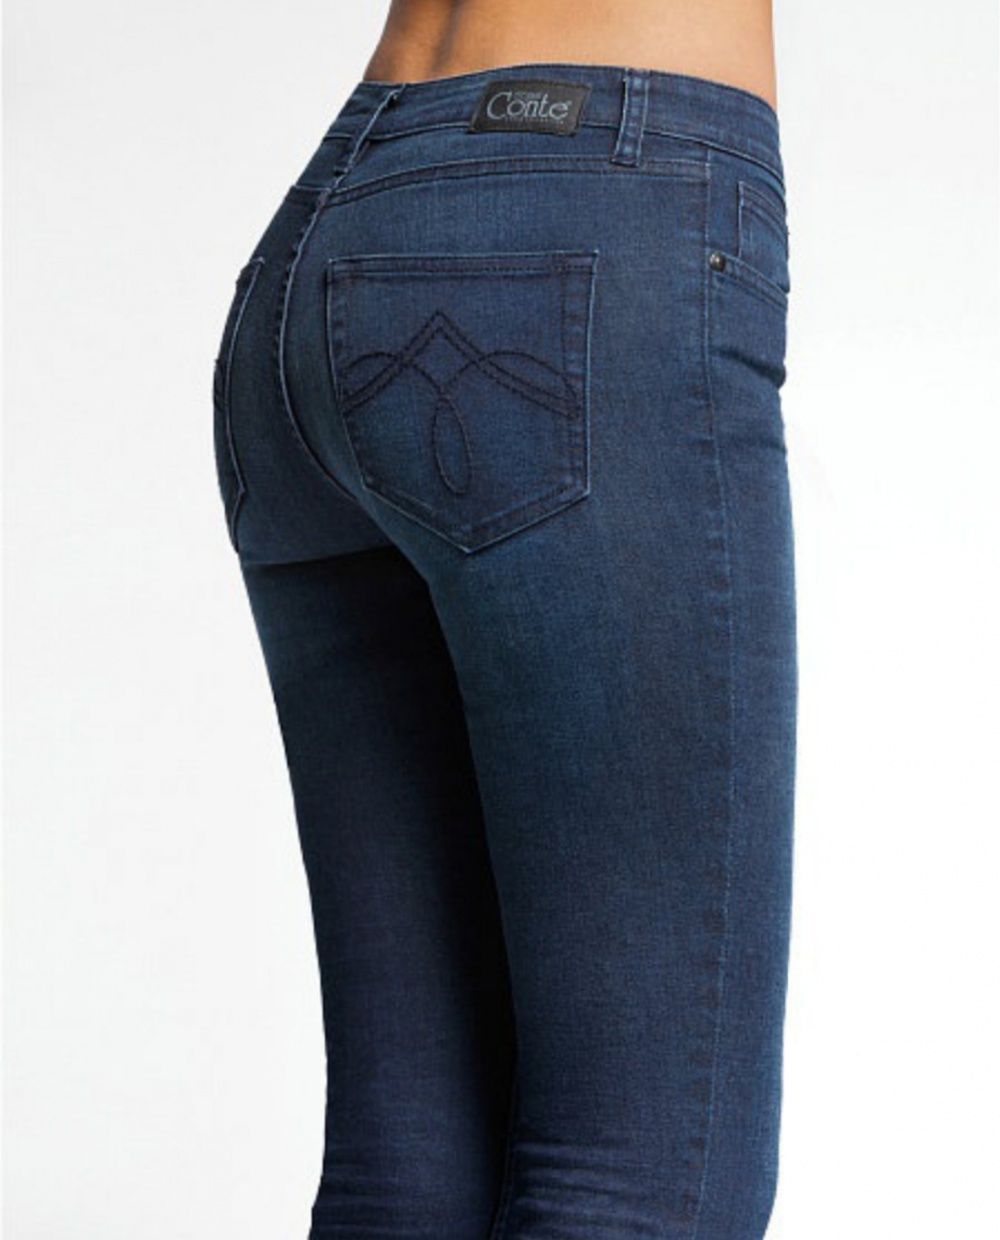 Купить джинсы 48 размера. Джинсы 416781 Conte. Conte Elegant Denim collection джинсы. Джинсы 116781 Conte. Синие джинсы женские.